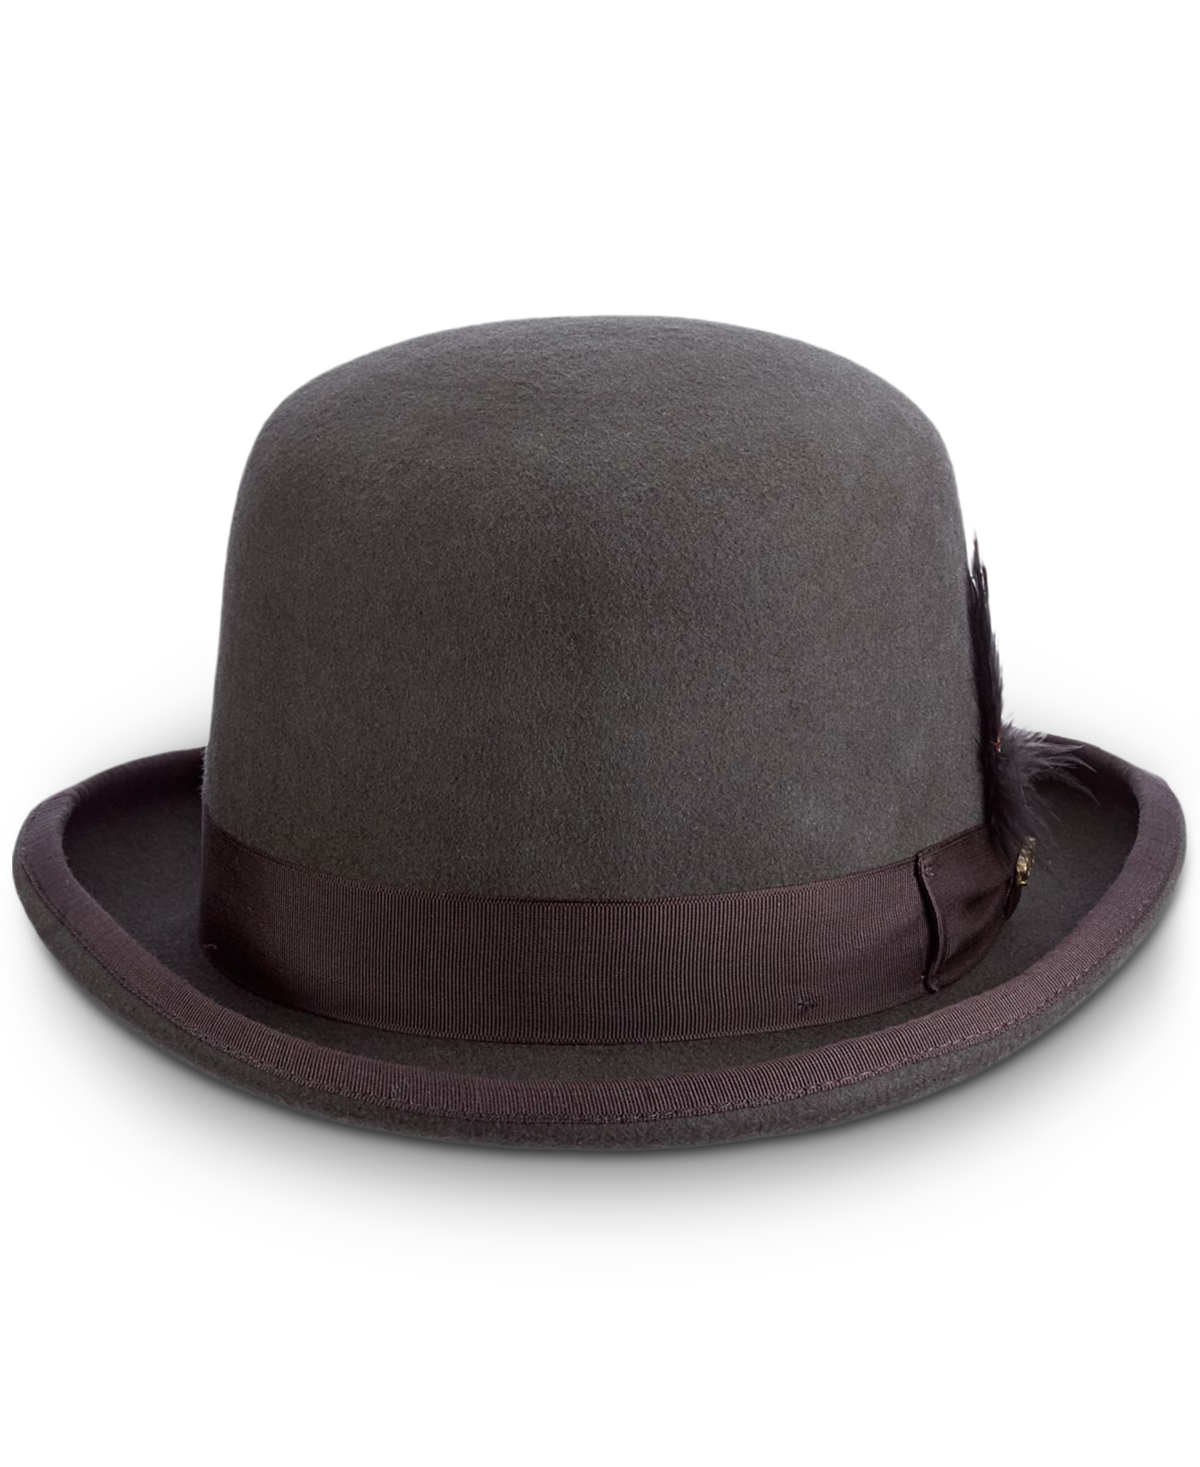 Men's Wool Derby Hat - Char